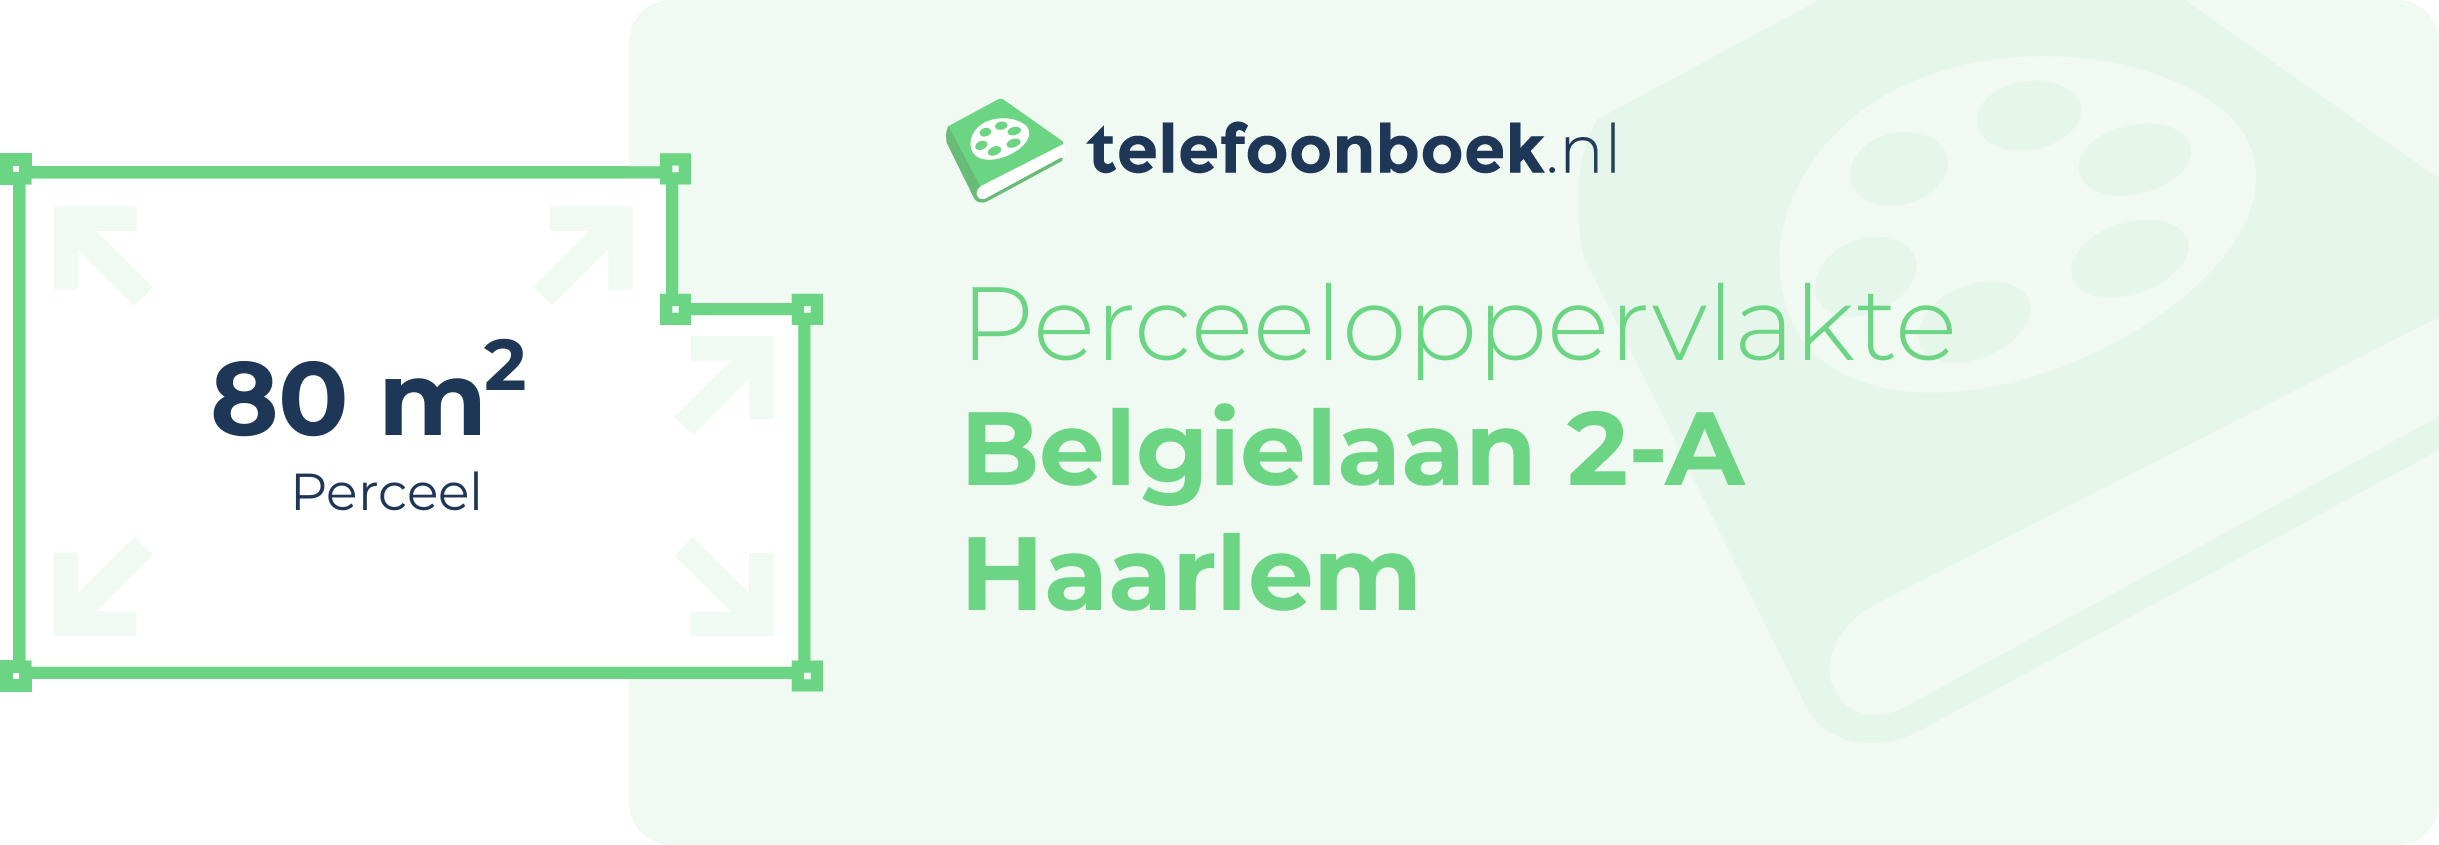 Perceeloppervlakte Belgielaan 2-A Haarlem